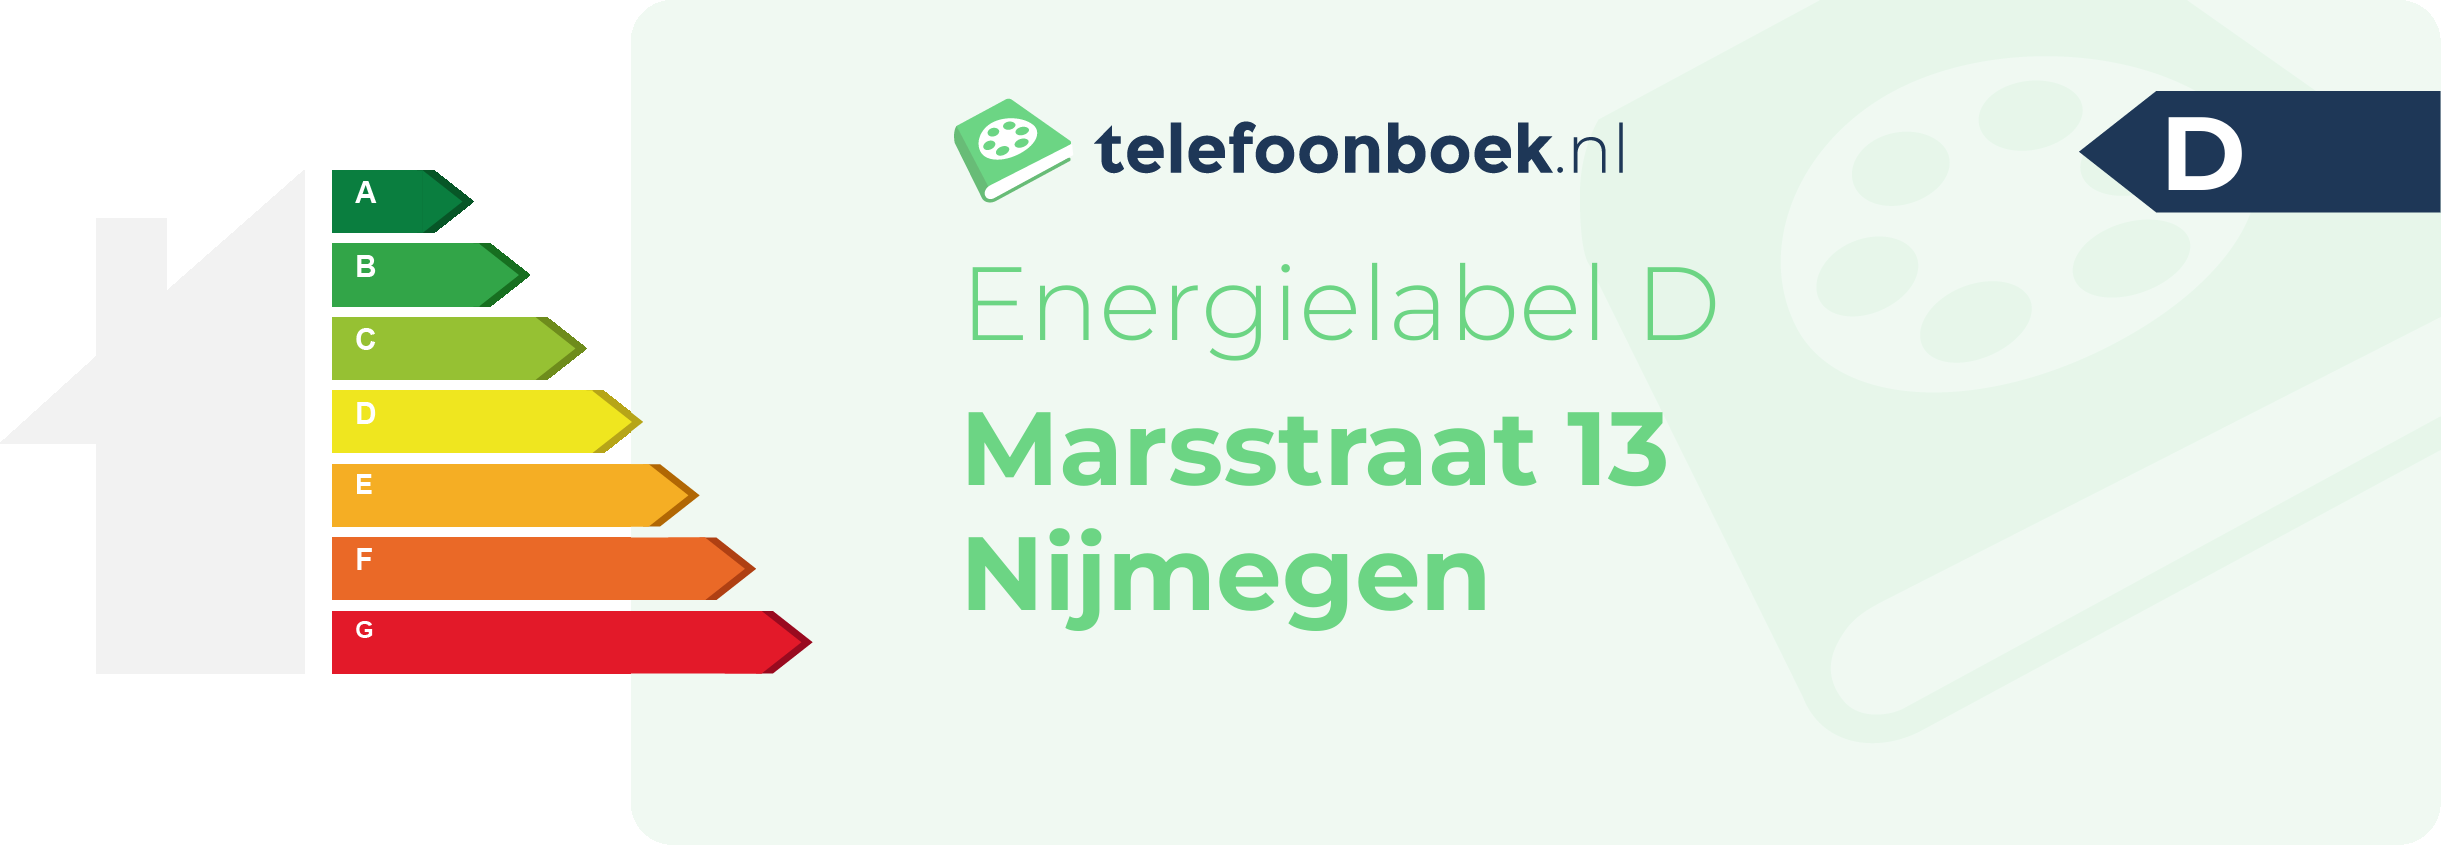 Energielabel Marsstraat 13 Nijmegen